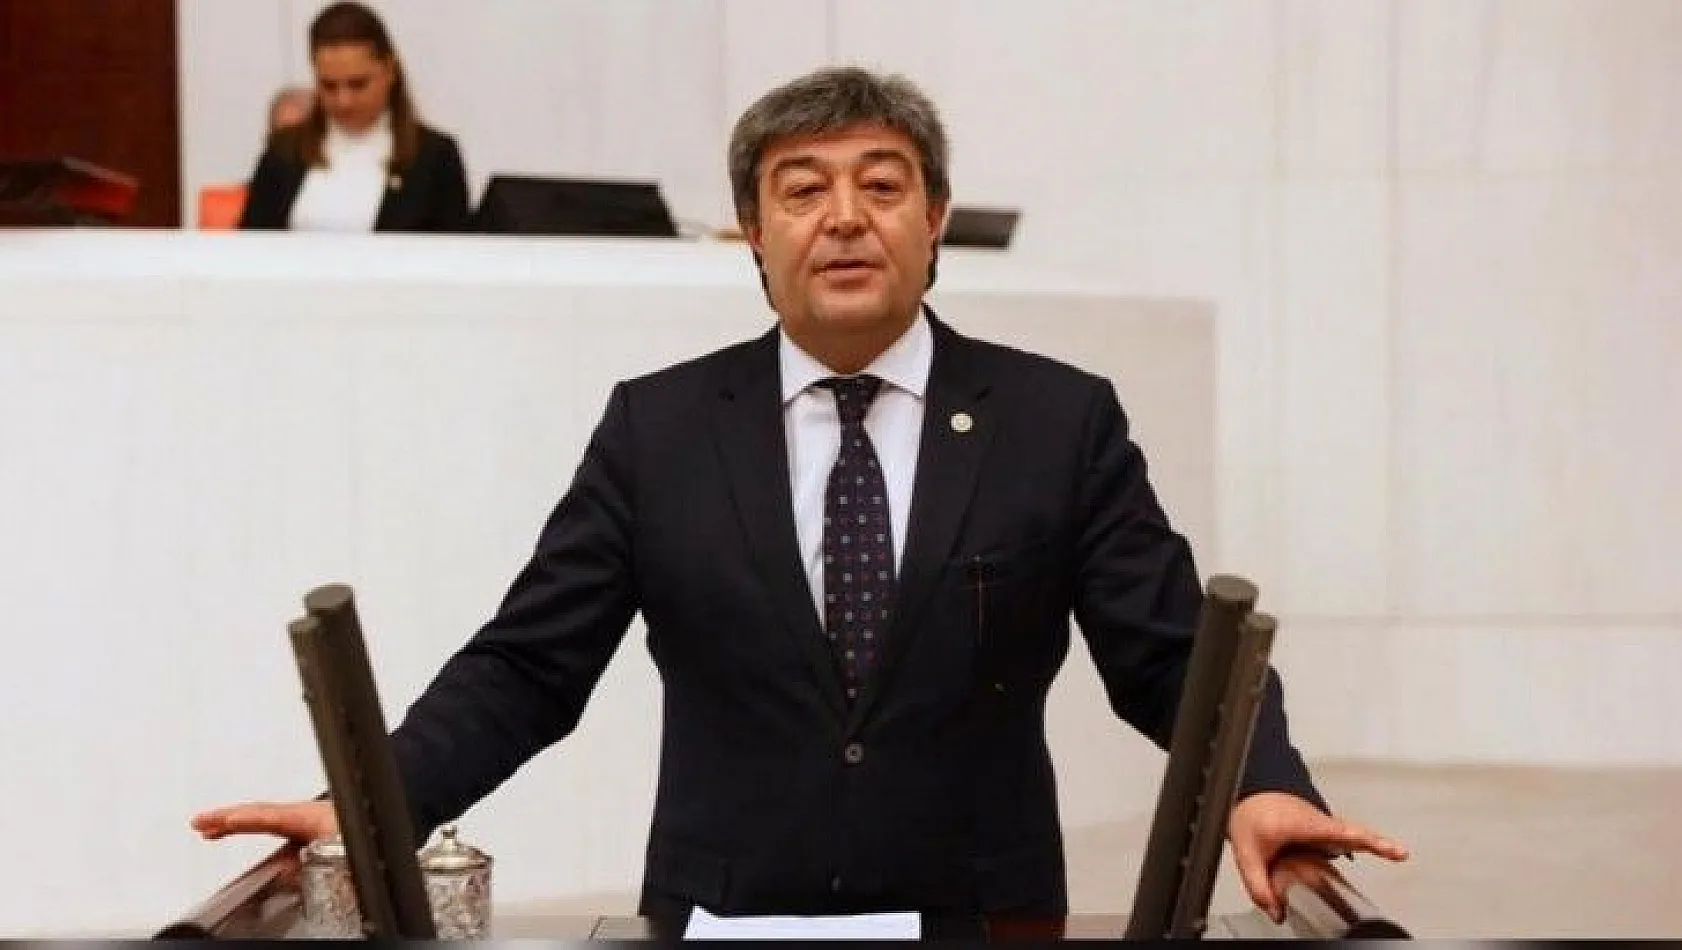 Milletvekili Ataş, iktidara seslendi: Önlem alınmazsa, üretimden vazgeçecekler!